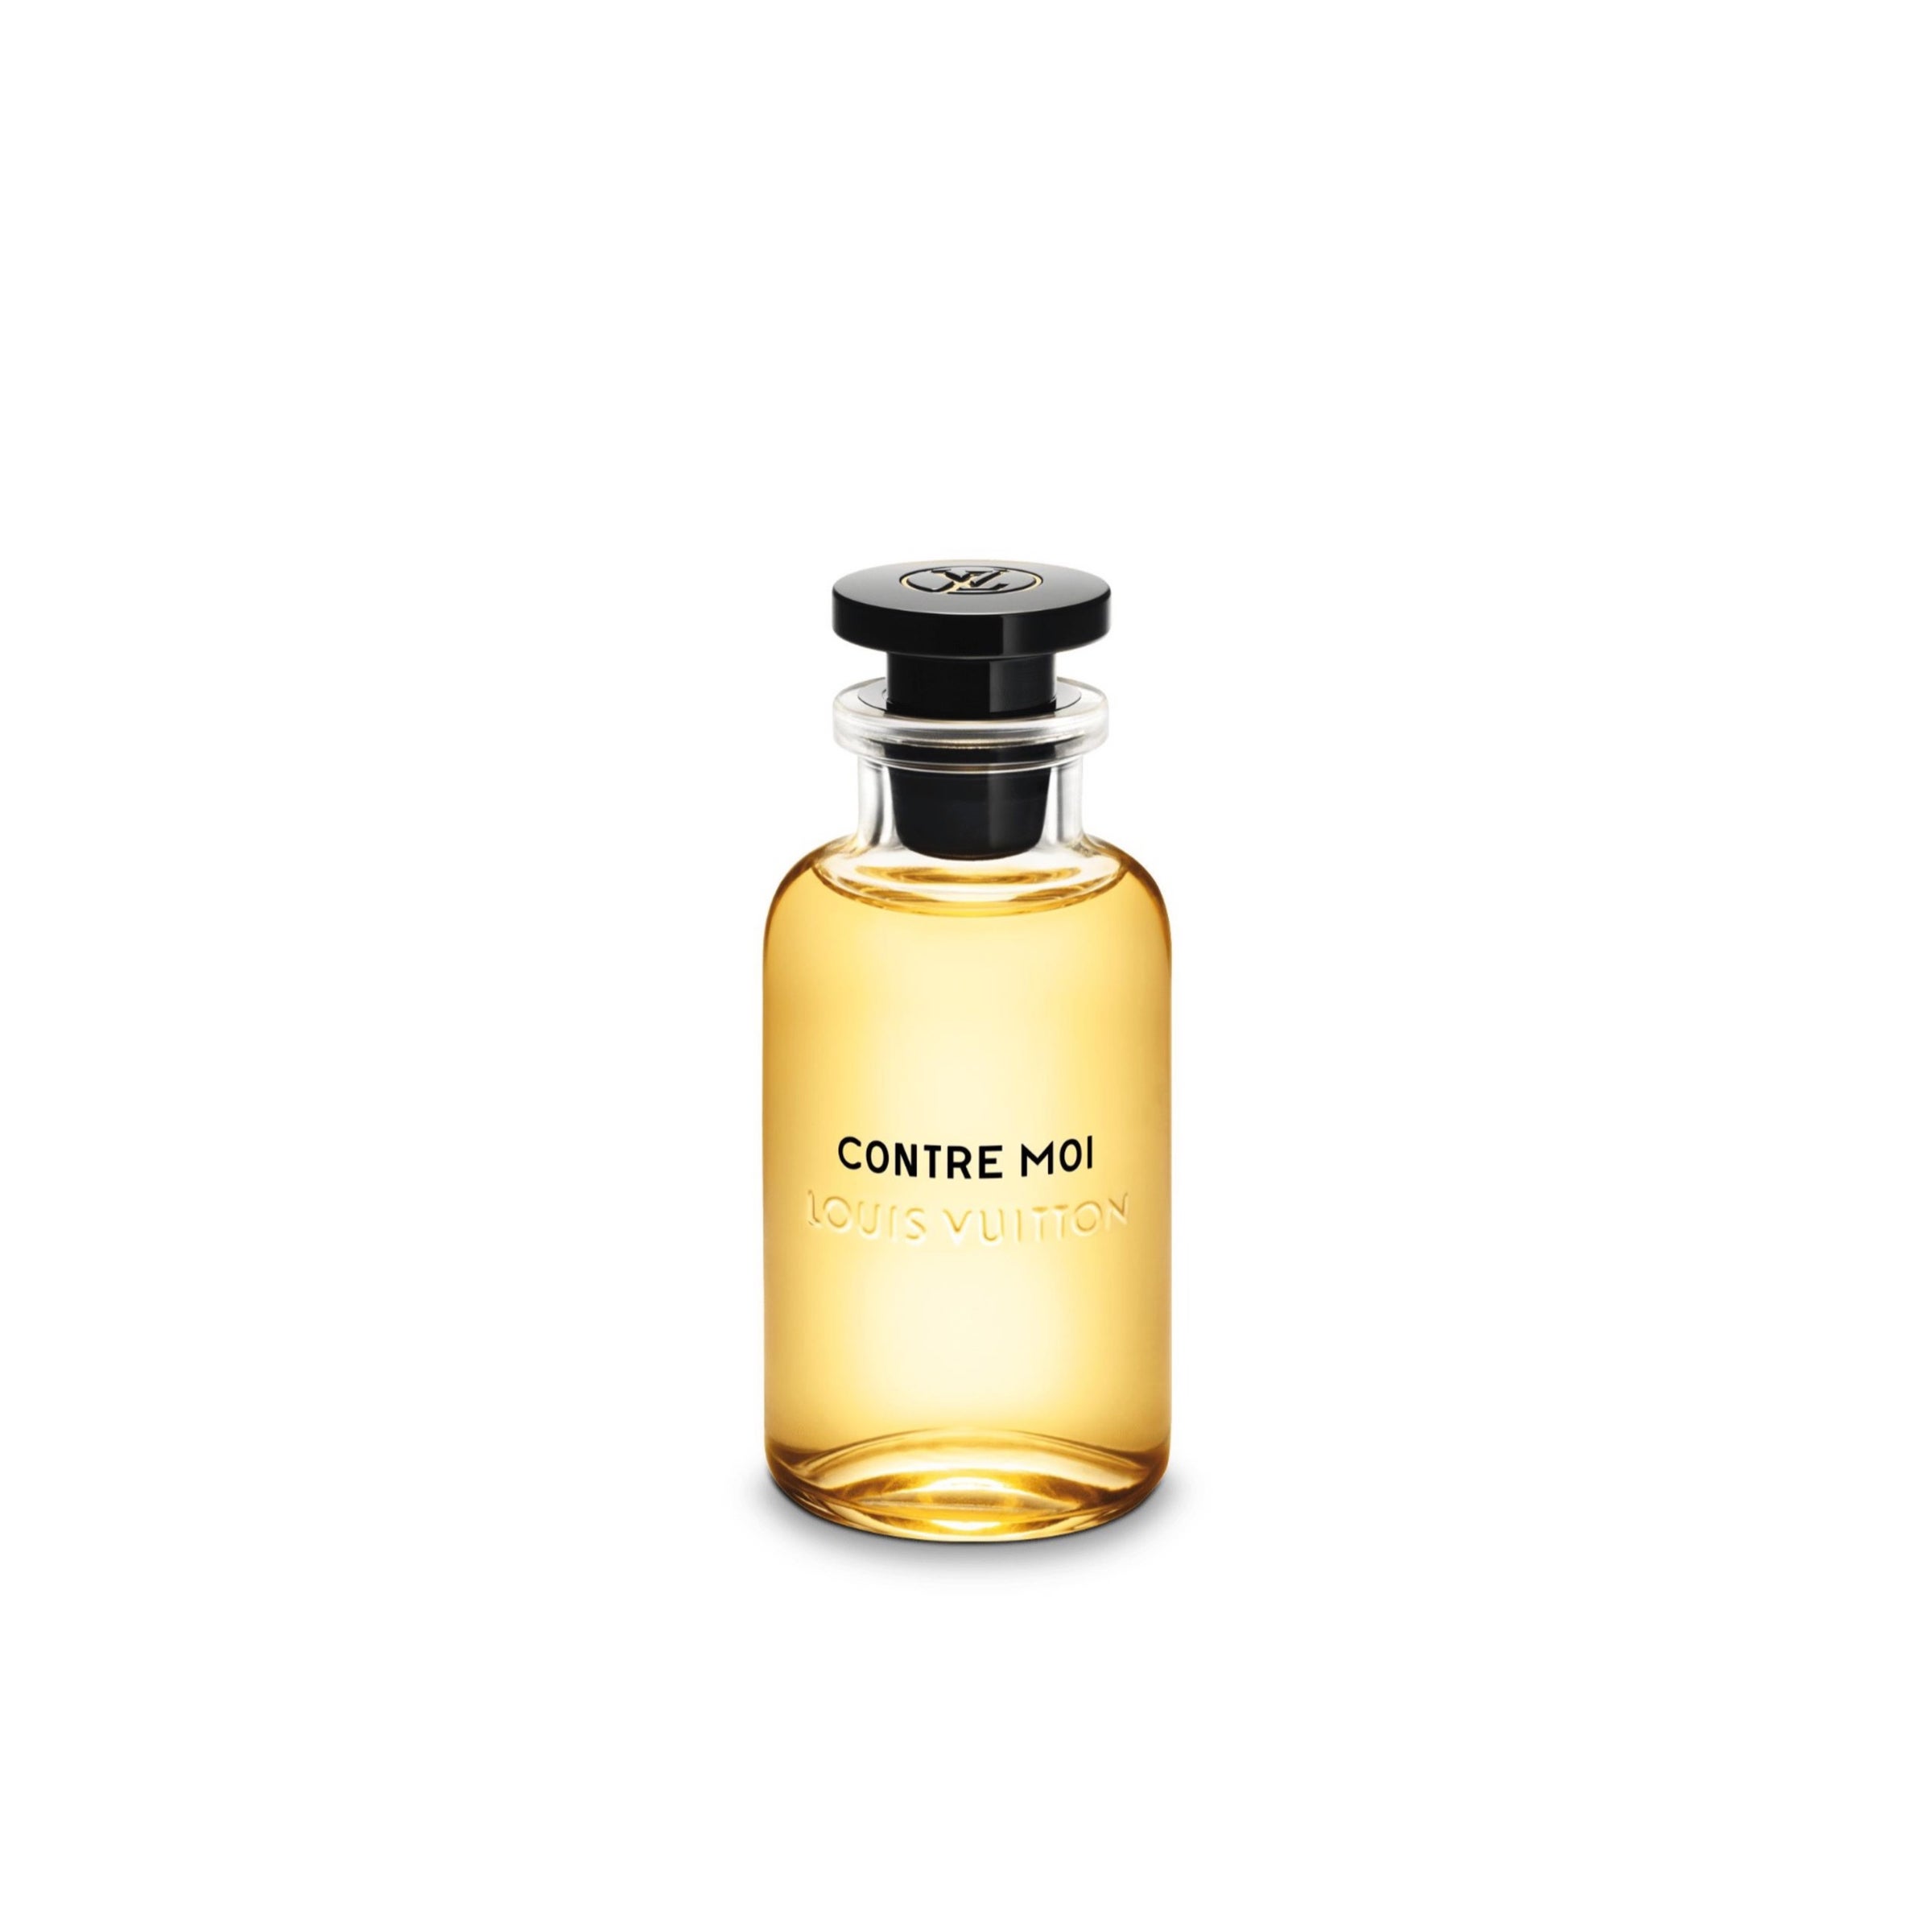 Ben yaghlane fragrance - Contre Moi de Louis Vuitton est un parfum